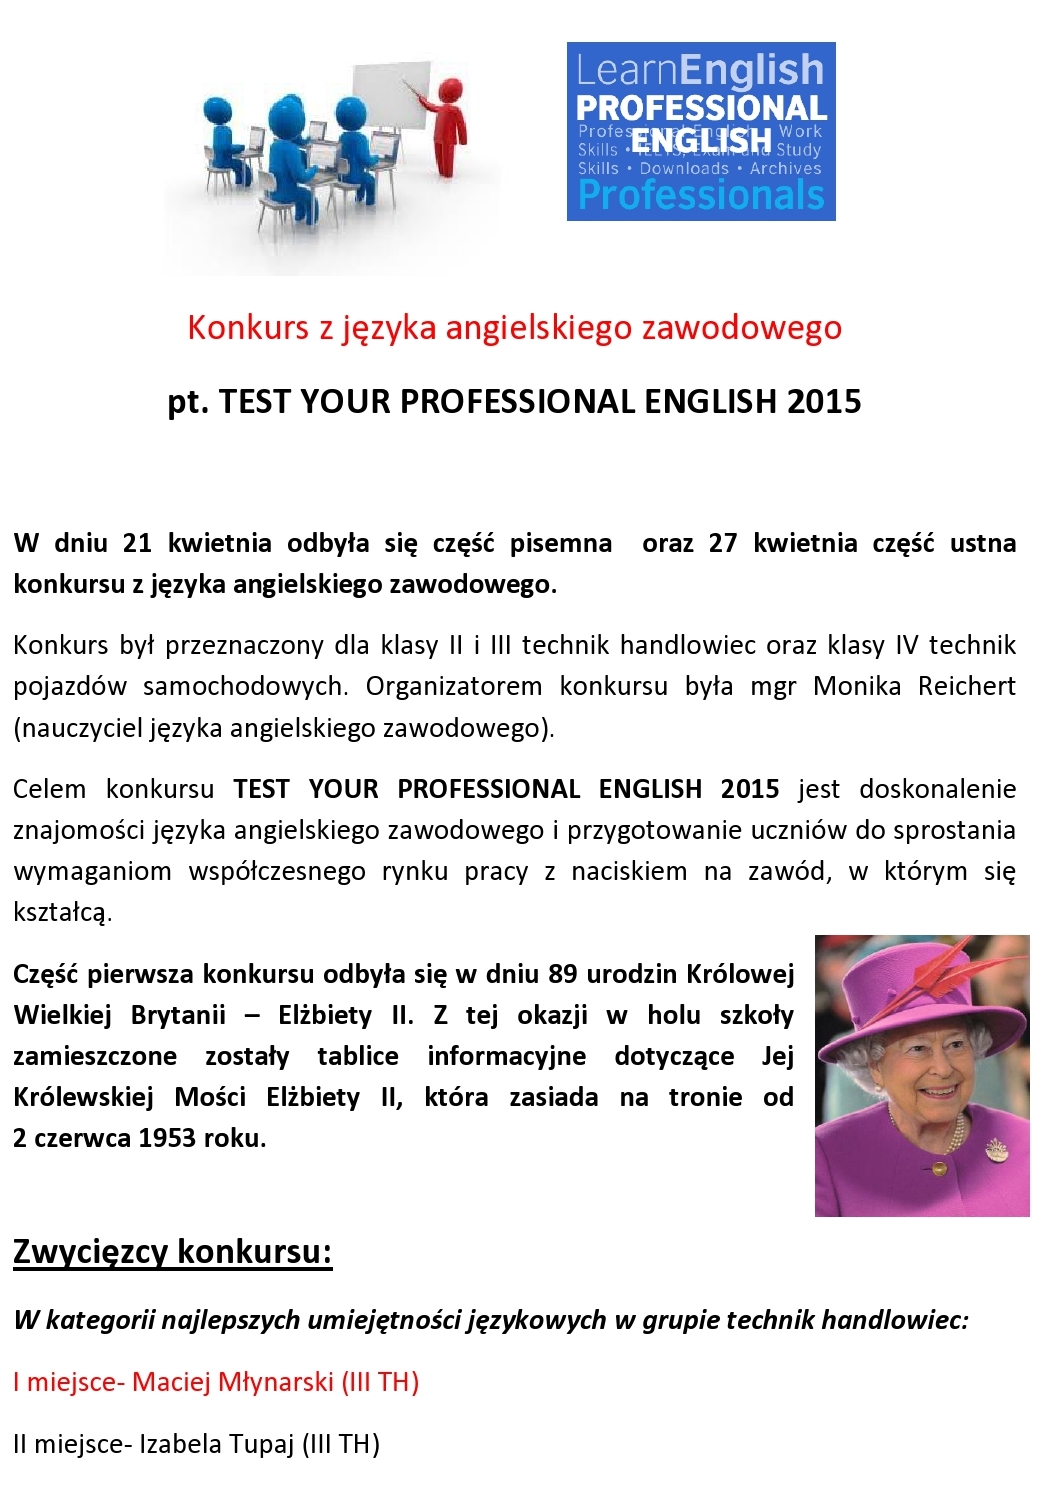 Konkurs z języka angielskiego zawodowego - opis-page0001